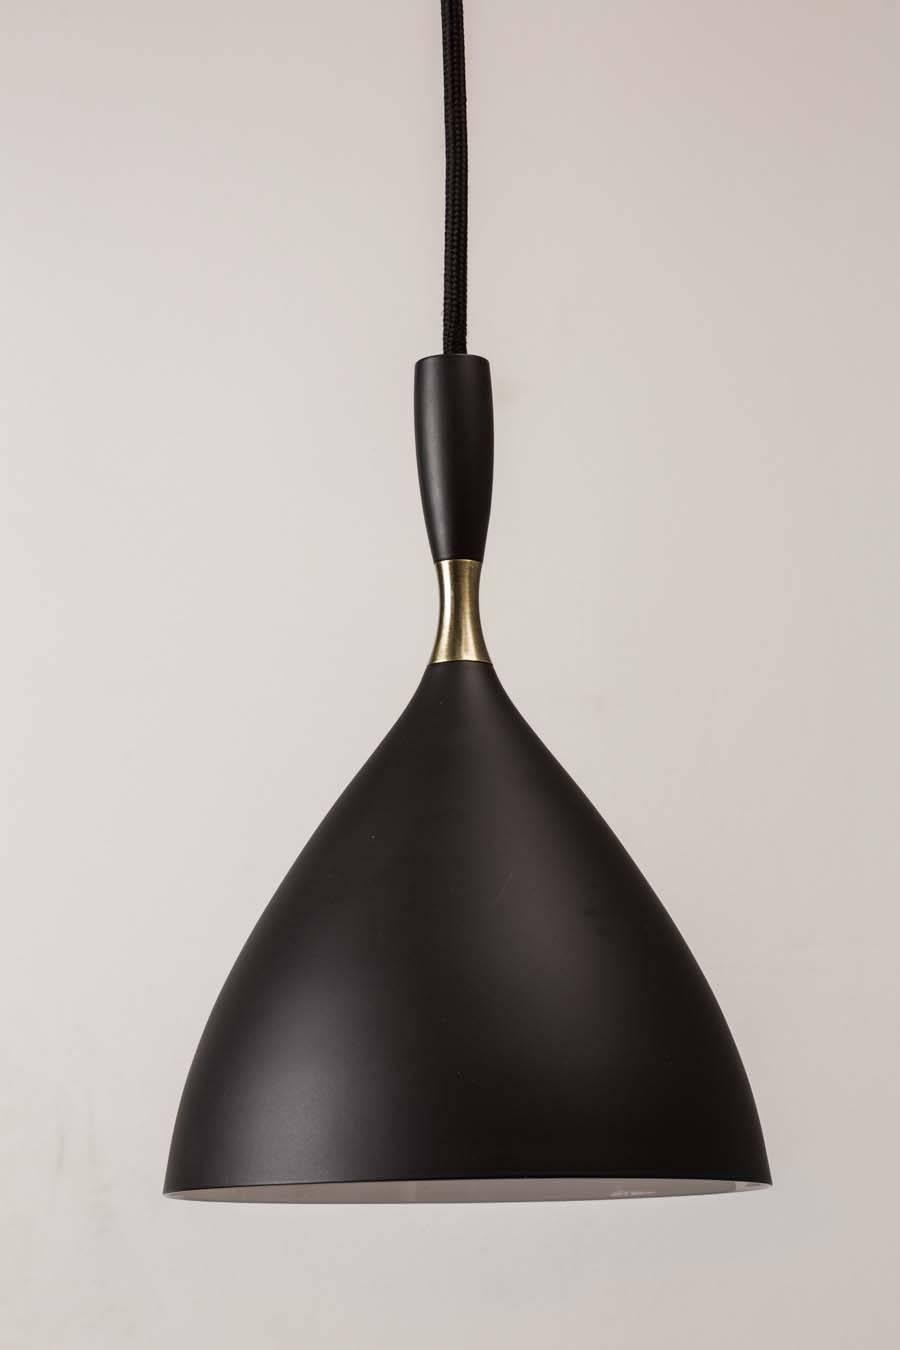 Birger Dahl-Anhänger im Stil von Stilnovo. Architektonische Pendelleuchten um 1954 entworfen und in schwarz emailliertem Metall mit exquisiten Messingdetails ausgeführt. 36 